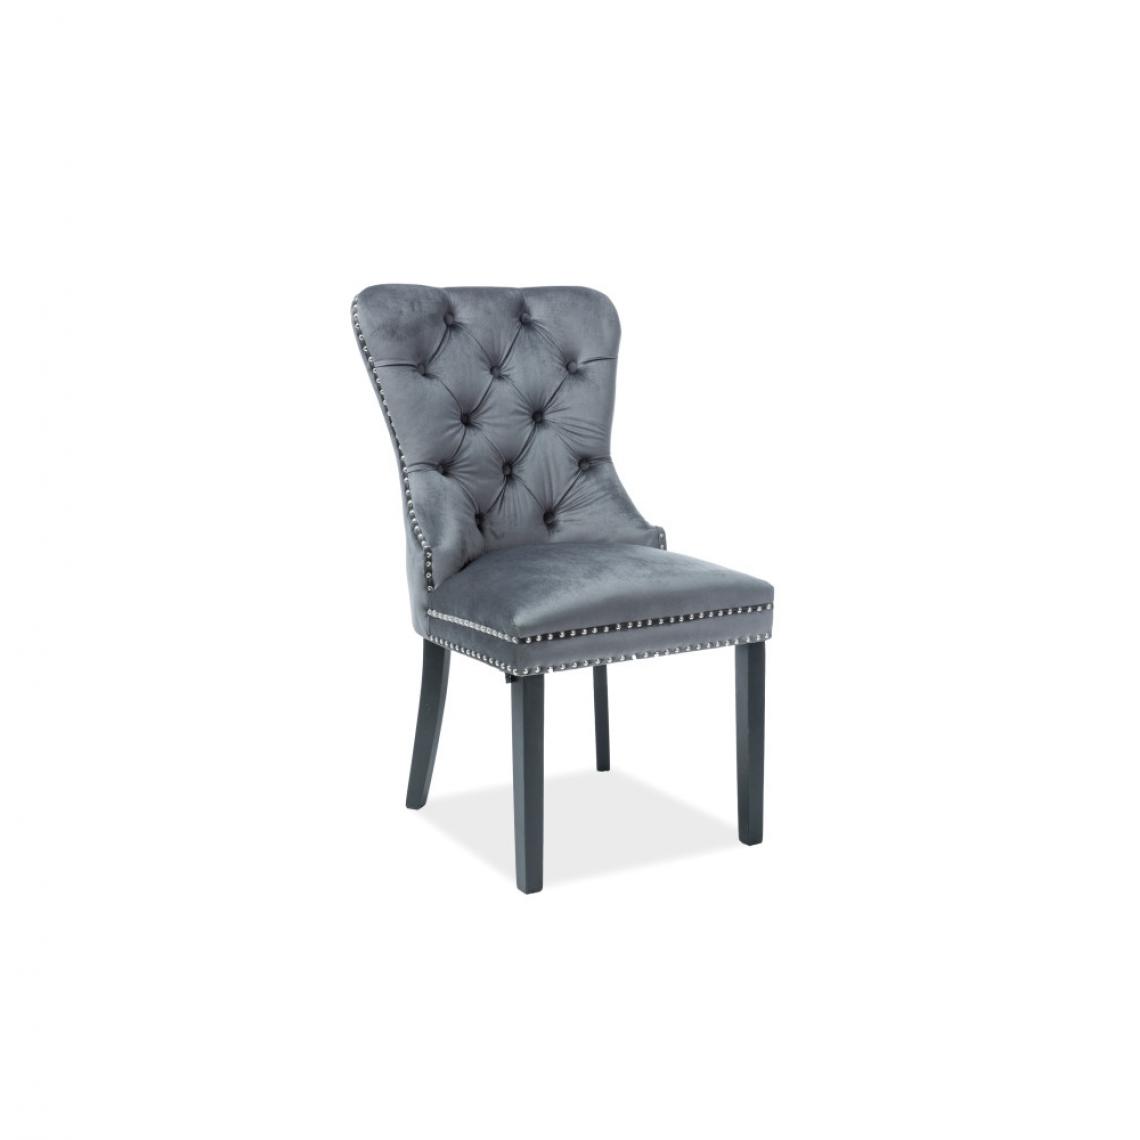 Ac-Deco - Chaise en velours - August - L 56 cm x H 98 cm - Gris - Chaises